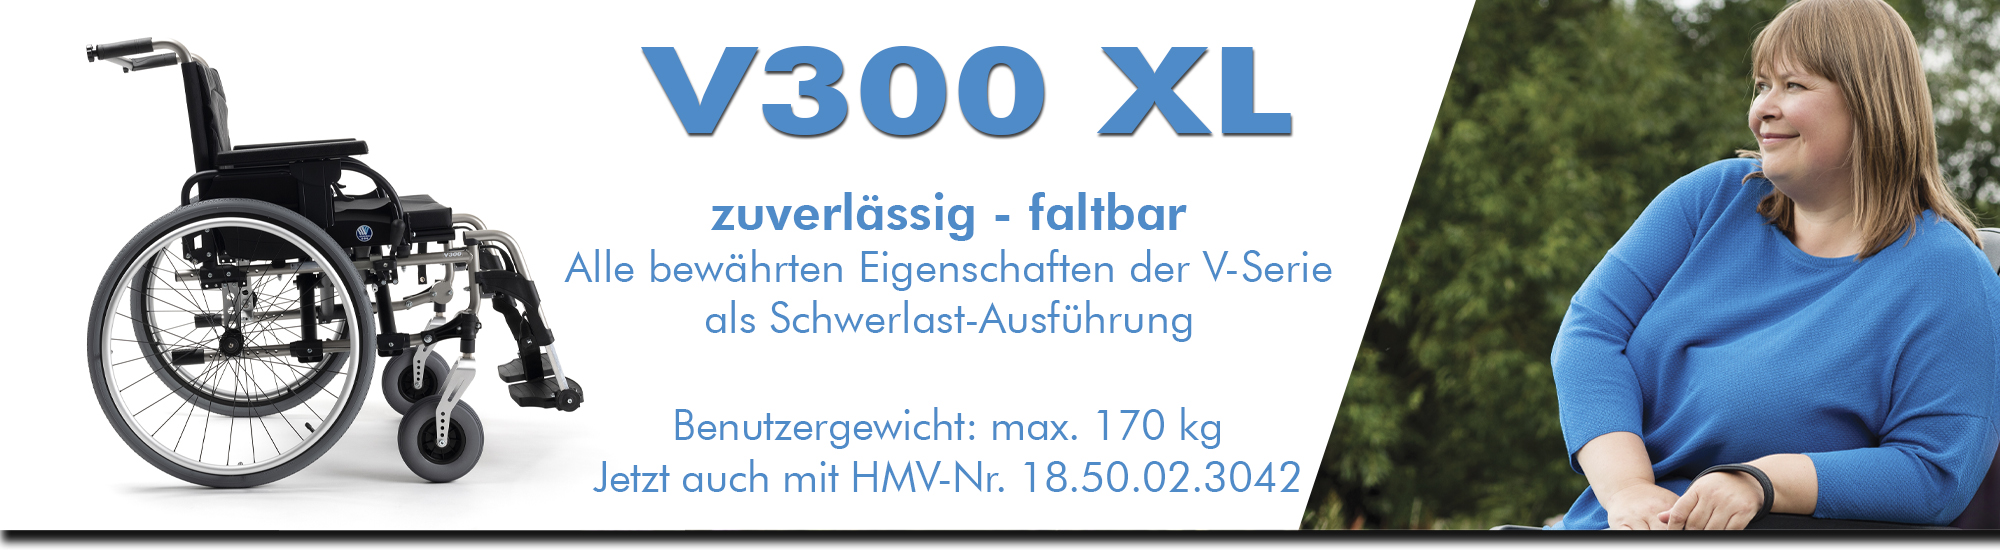 V300 XL